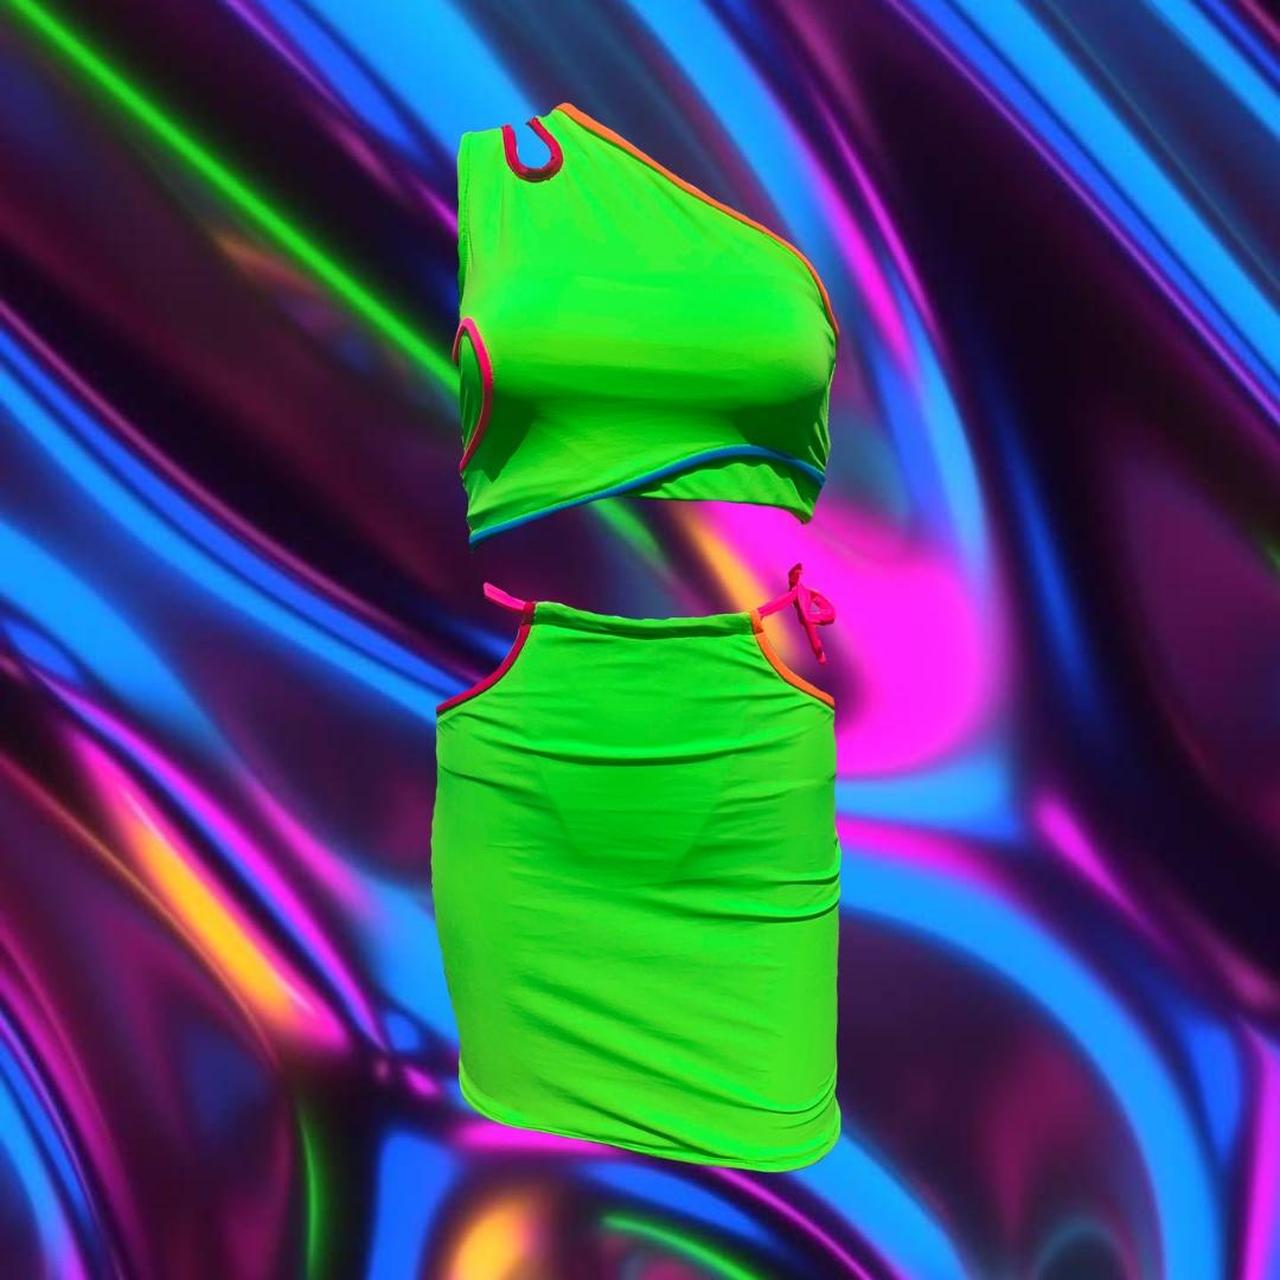 "Neon Luv" Skirt-Kini Set